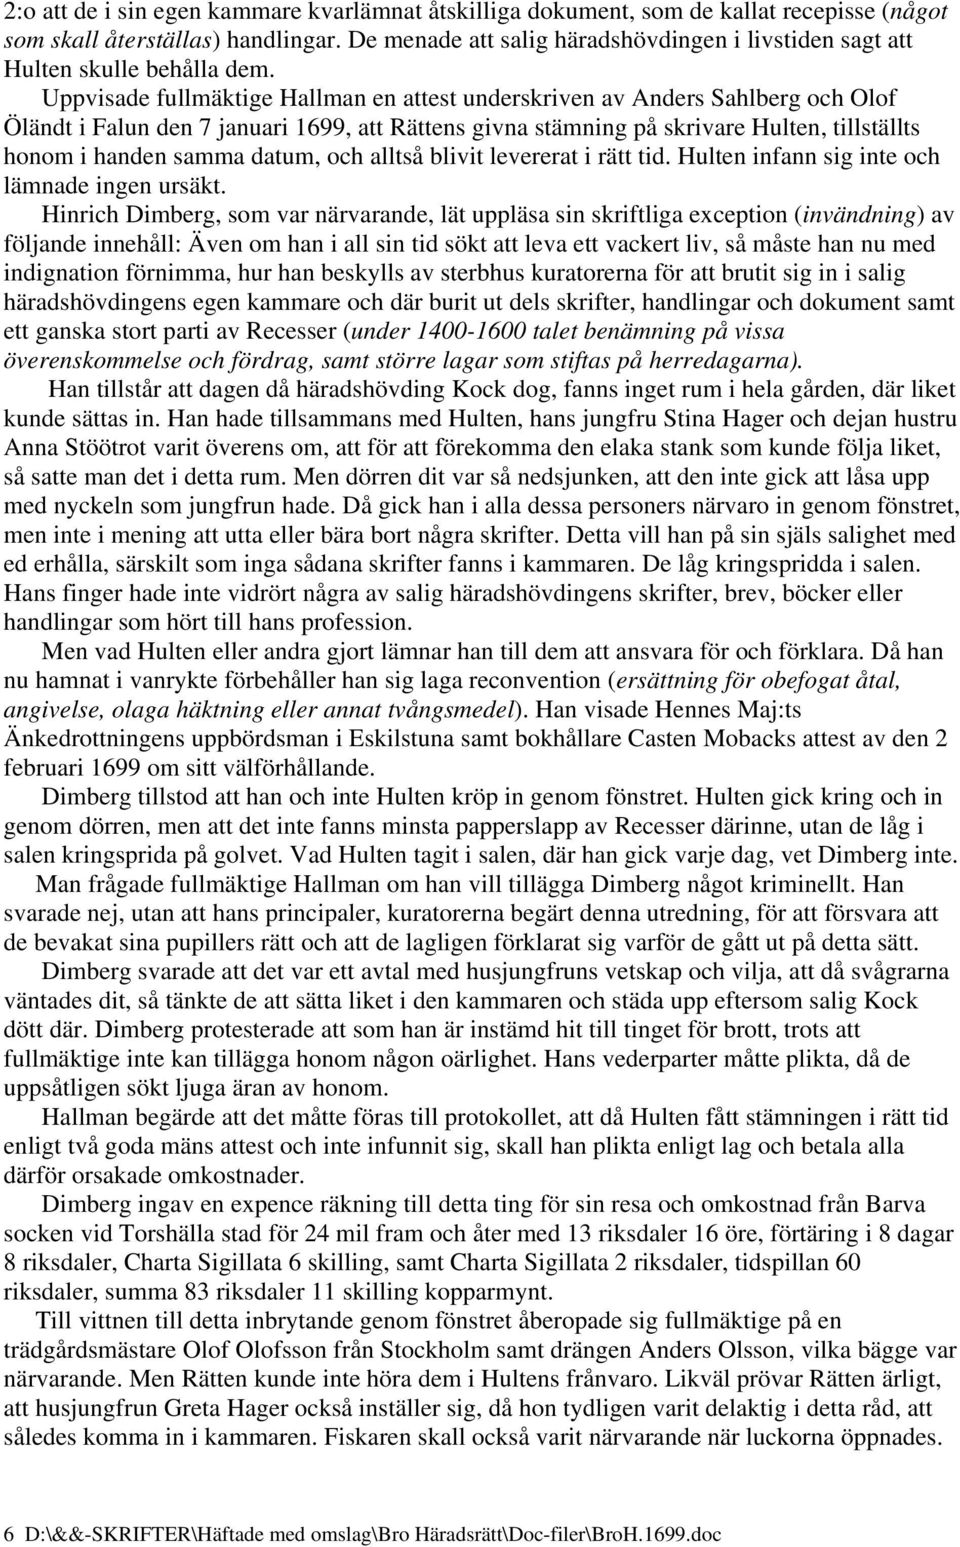 Uppvisade fullmäktige Hallman en attest underskriven av Anders Sahlberg och Olof Öländt i Falun den 7 januari 1699, att Rättens givna stämning på skrivare Hulten, tillställts honom i handen samma